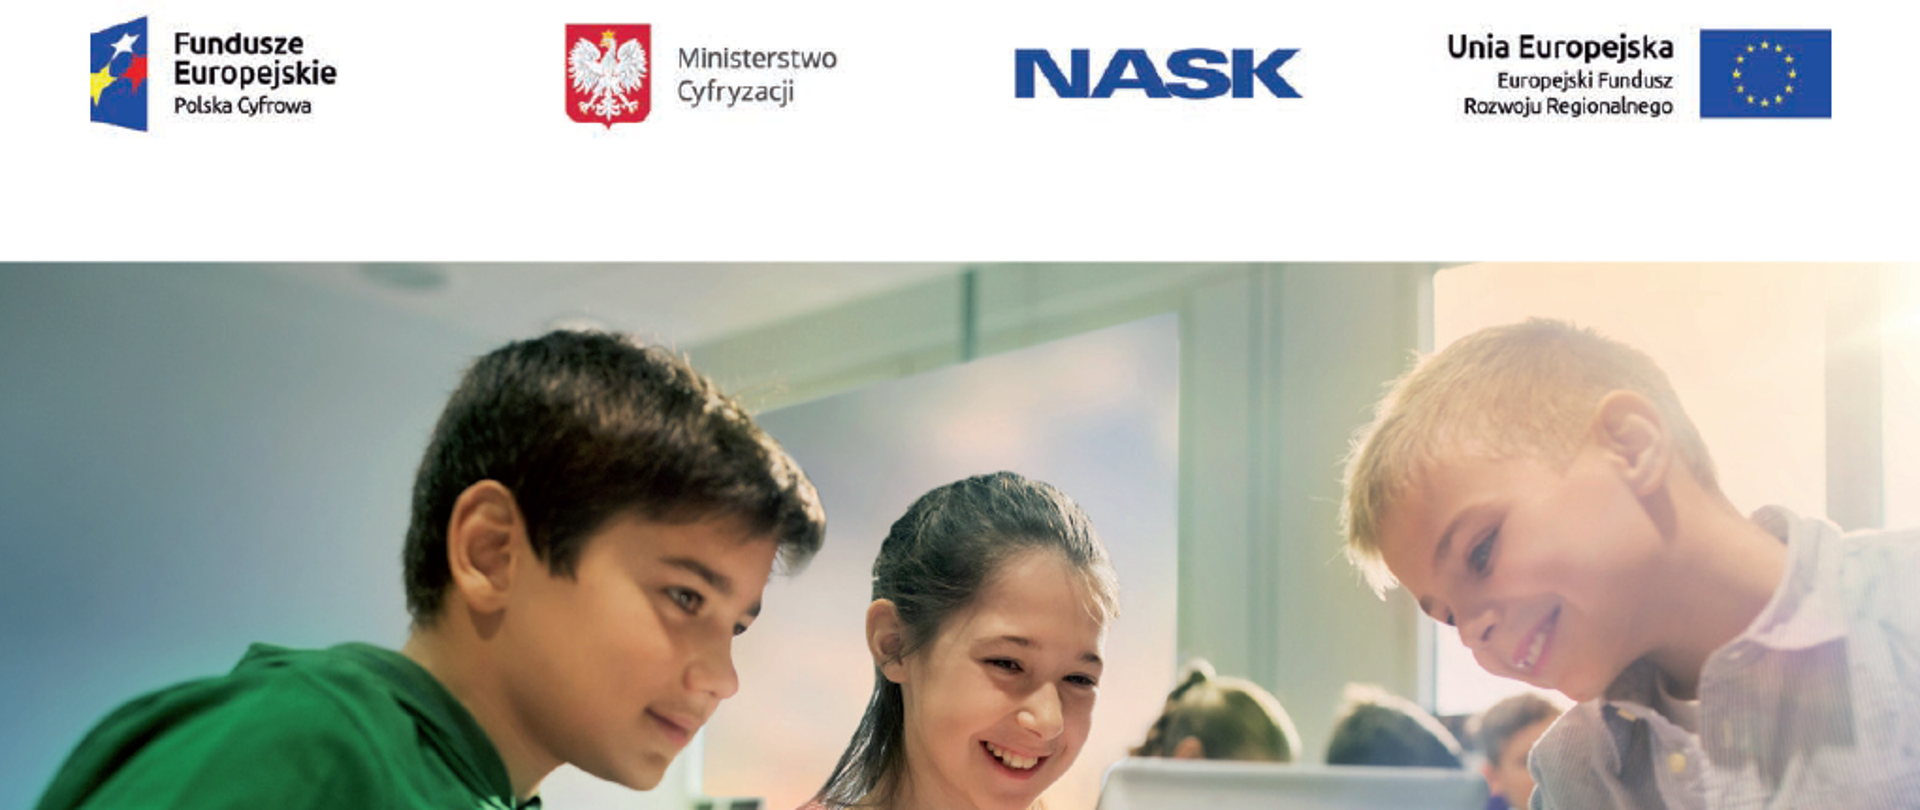 Na zdjęciu widzimy dwóch chłopców i jedną dziewczynkę, bawiących się tabletem. Na górze widoczne są logotypy: Fundusze Europejskiej. Polska Cyfrowa, Ministerstwo Cyfryzacji, NASK, Unia Europejska. Europejski Fundusz Rozwoju Regionalnego 